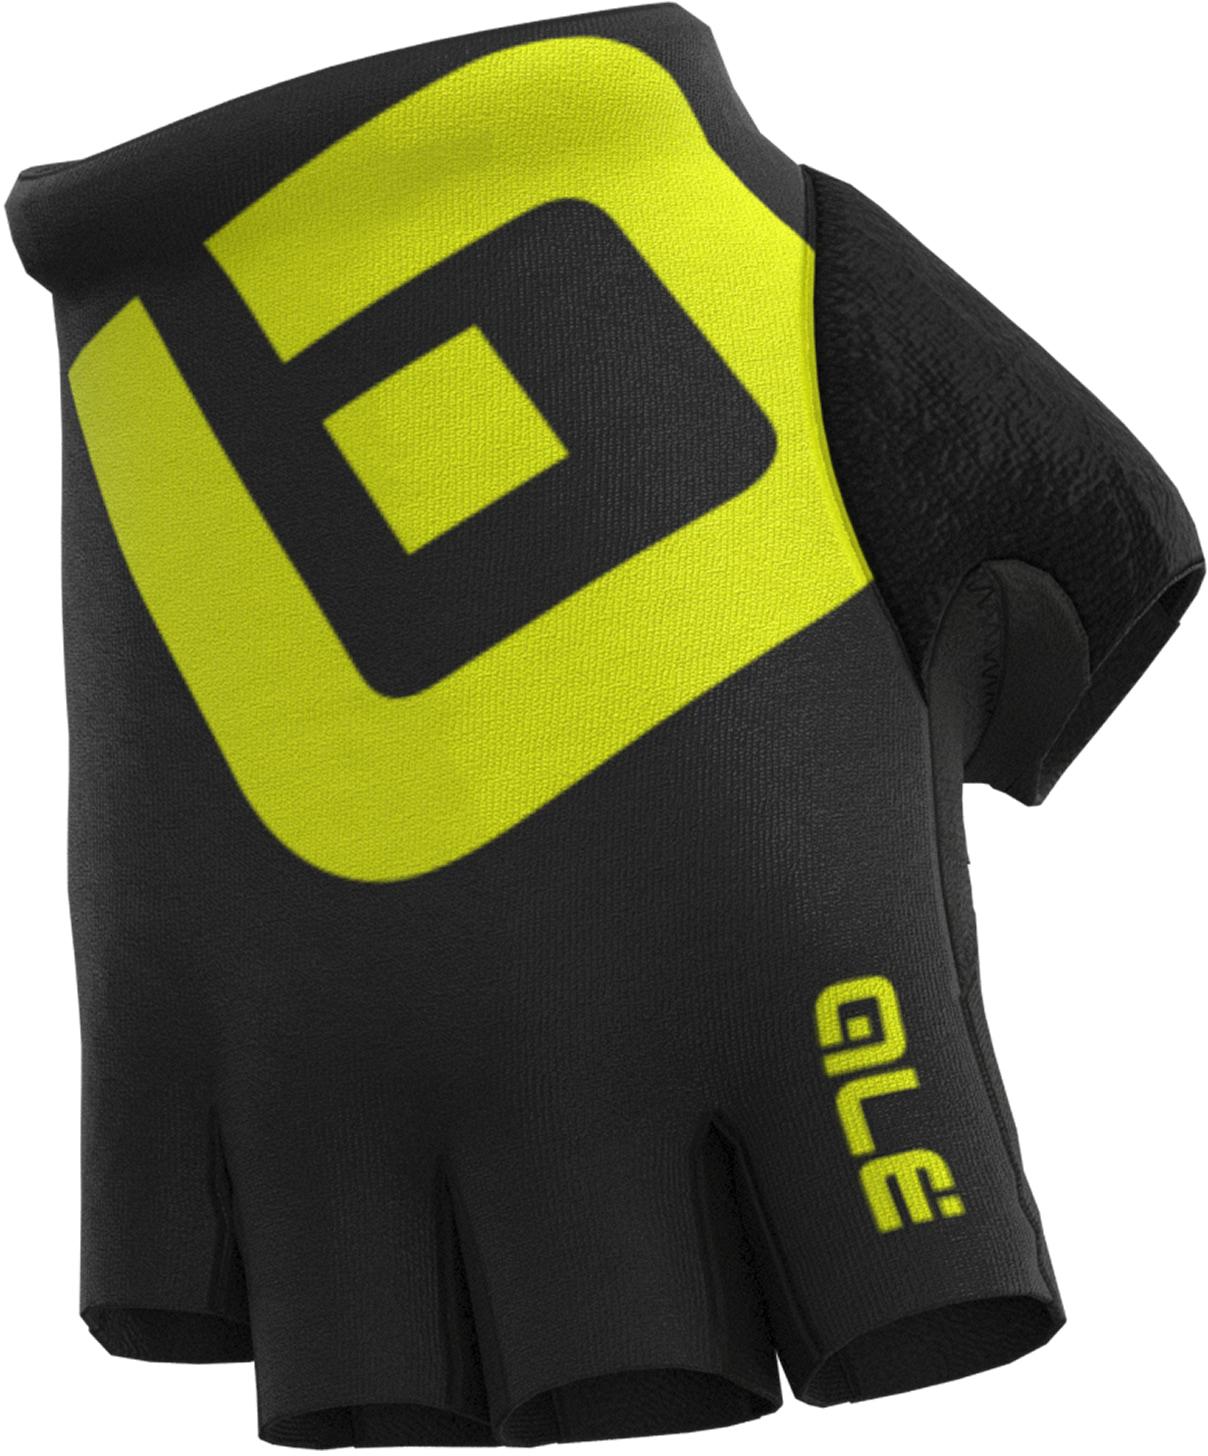 Al Air Gloves - Black/yellow